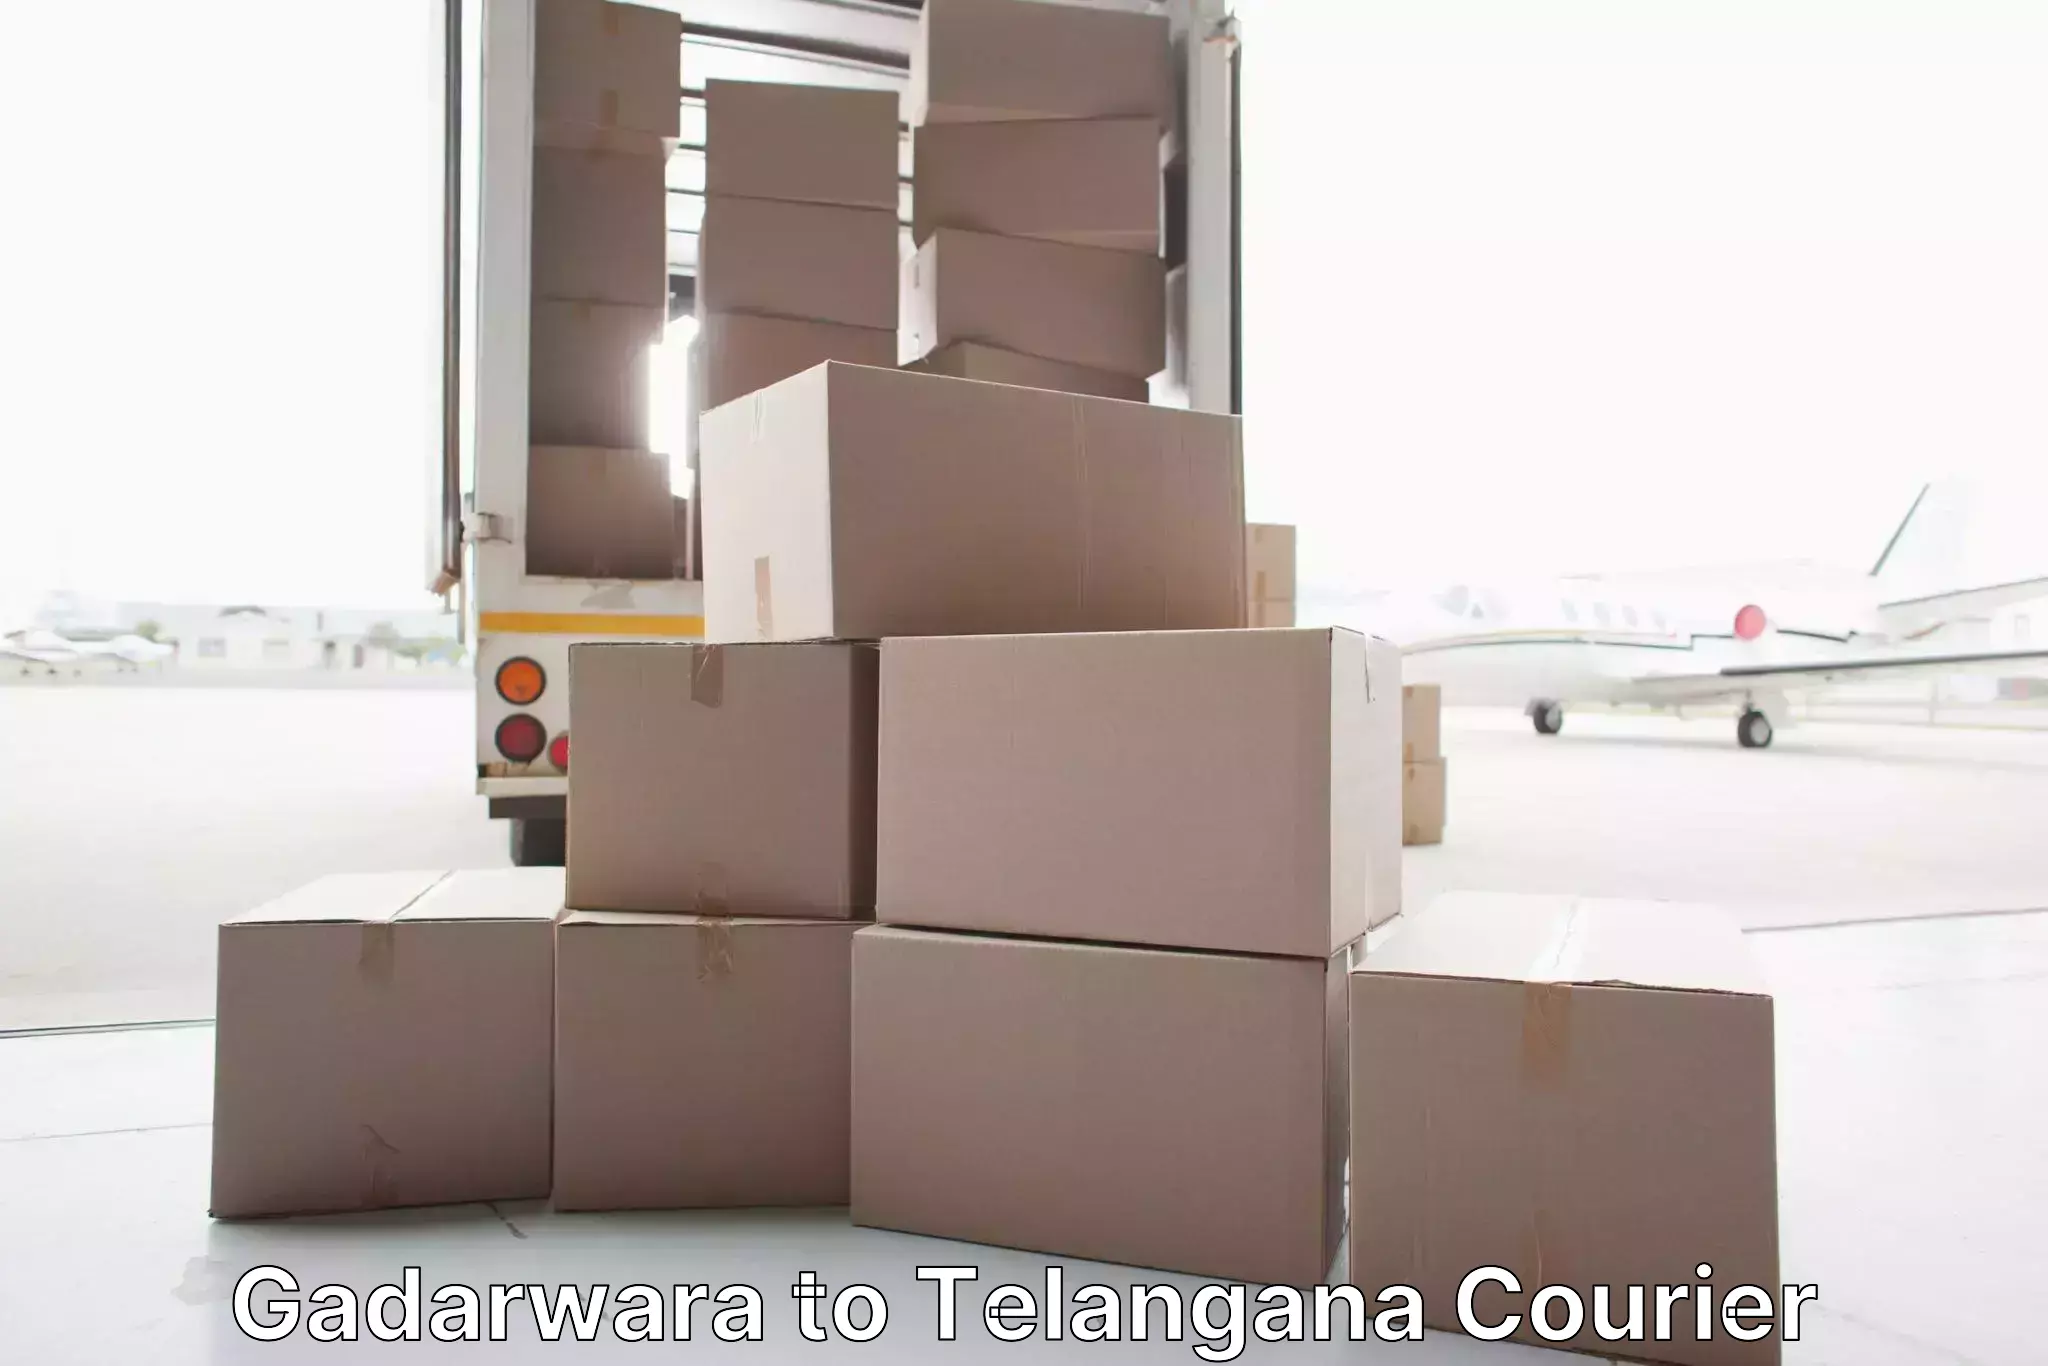 Furniture transport and logistics in Gadarwara to Trimulgherry